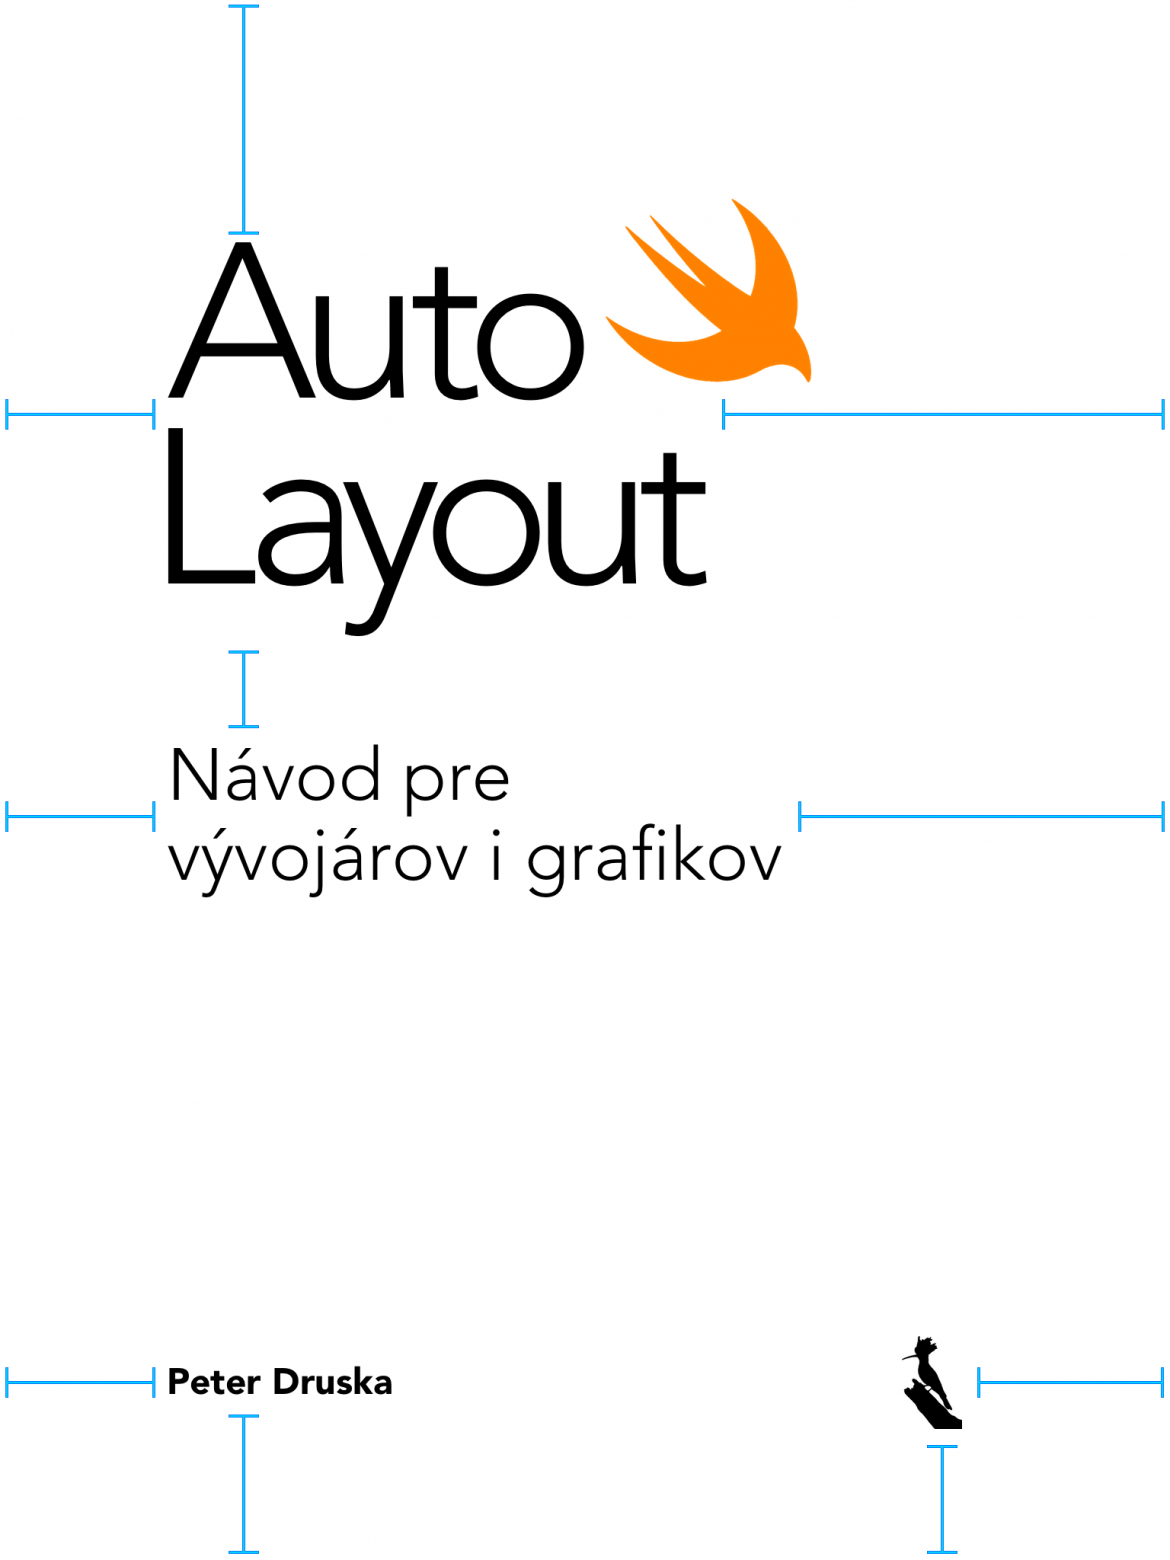 Auto_Layout-Navod_pre_vyvojarov_i_grafikov.png